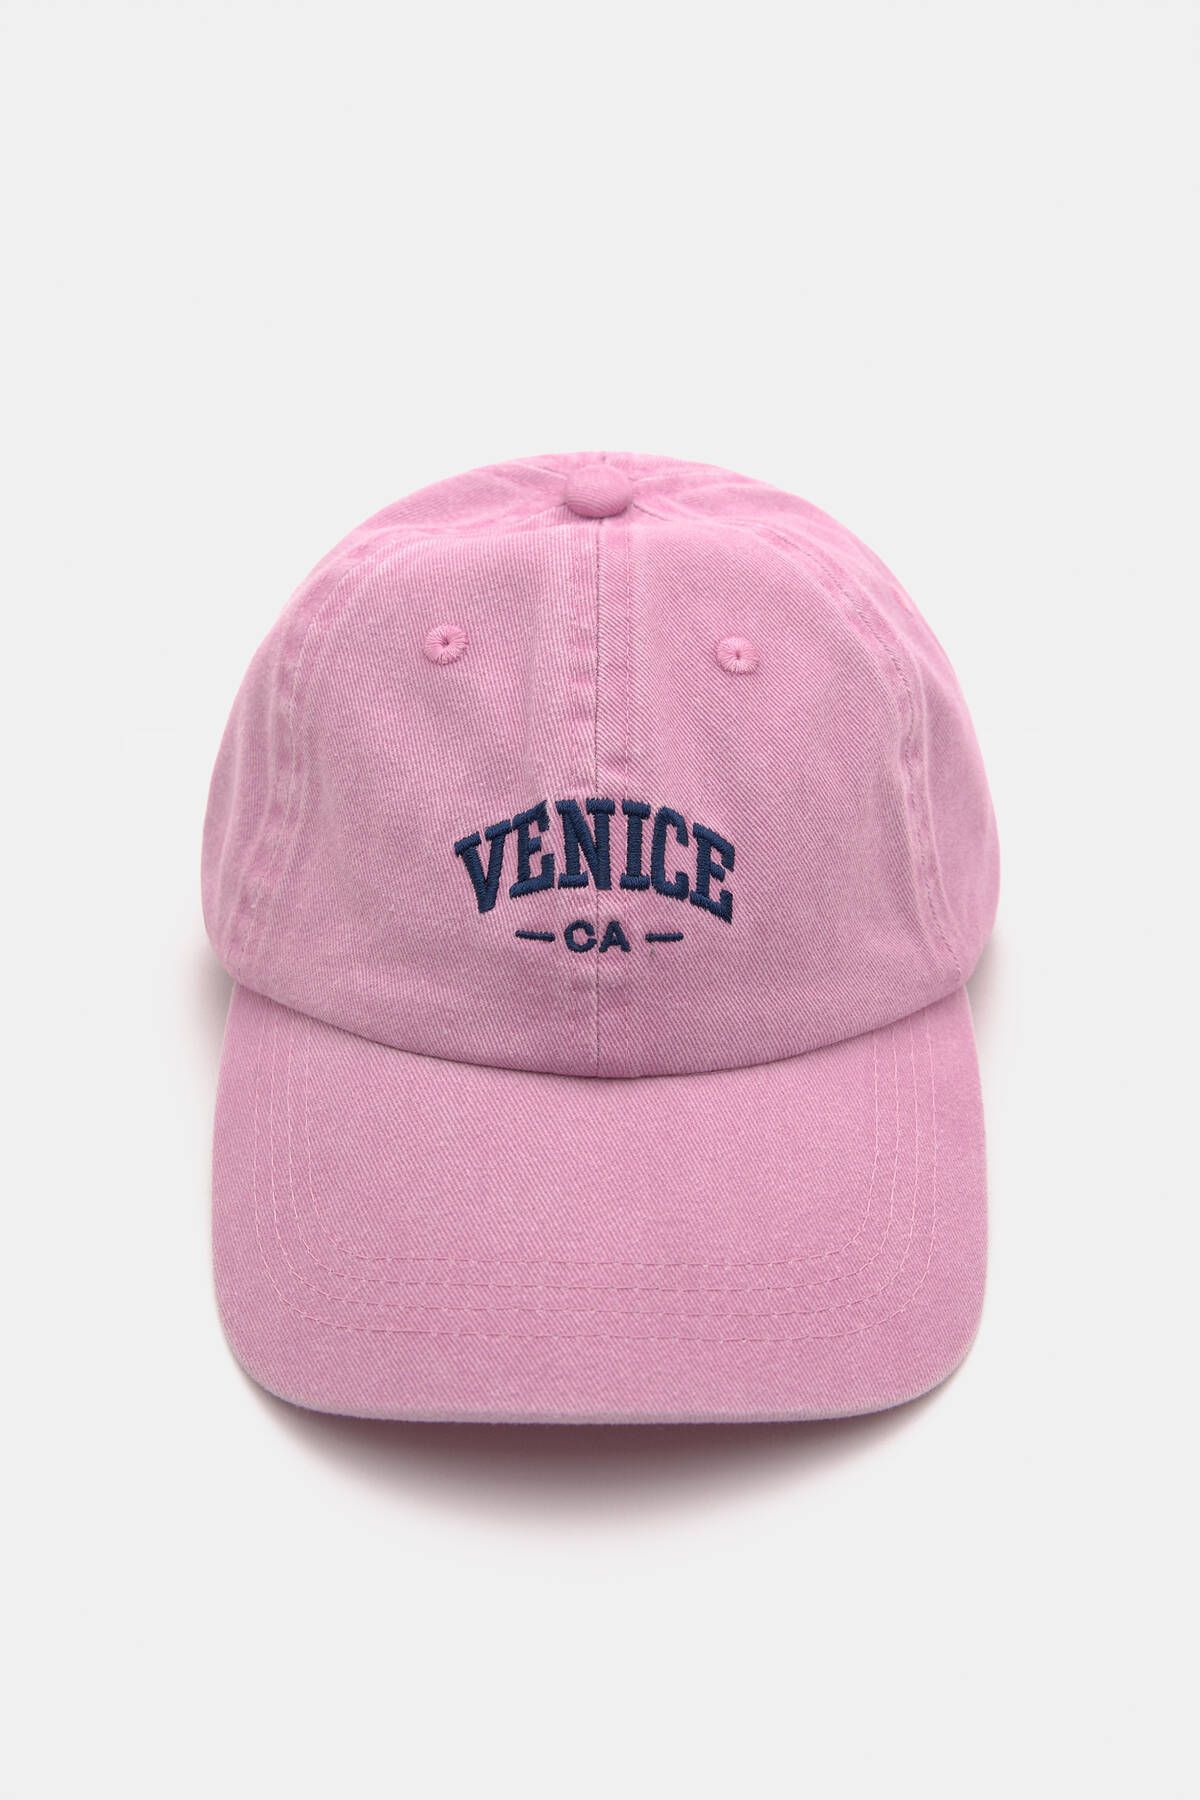 Pull & Bear Venice yazılı ve soluk efektli şapka